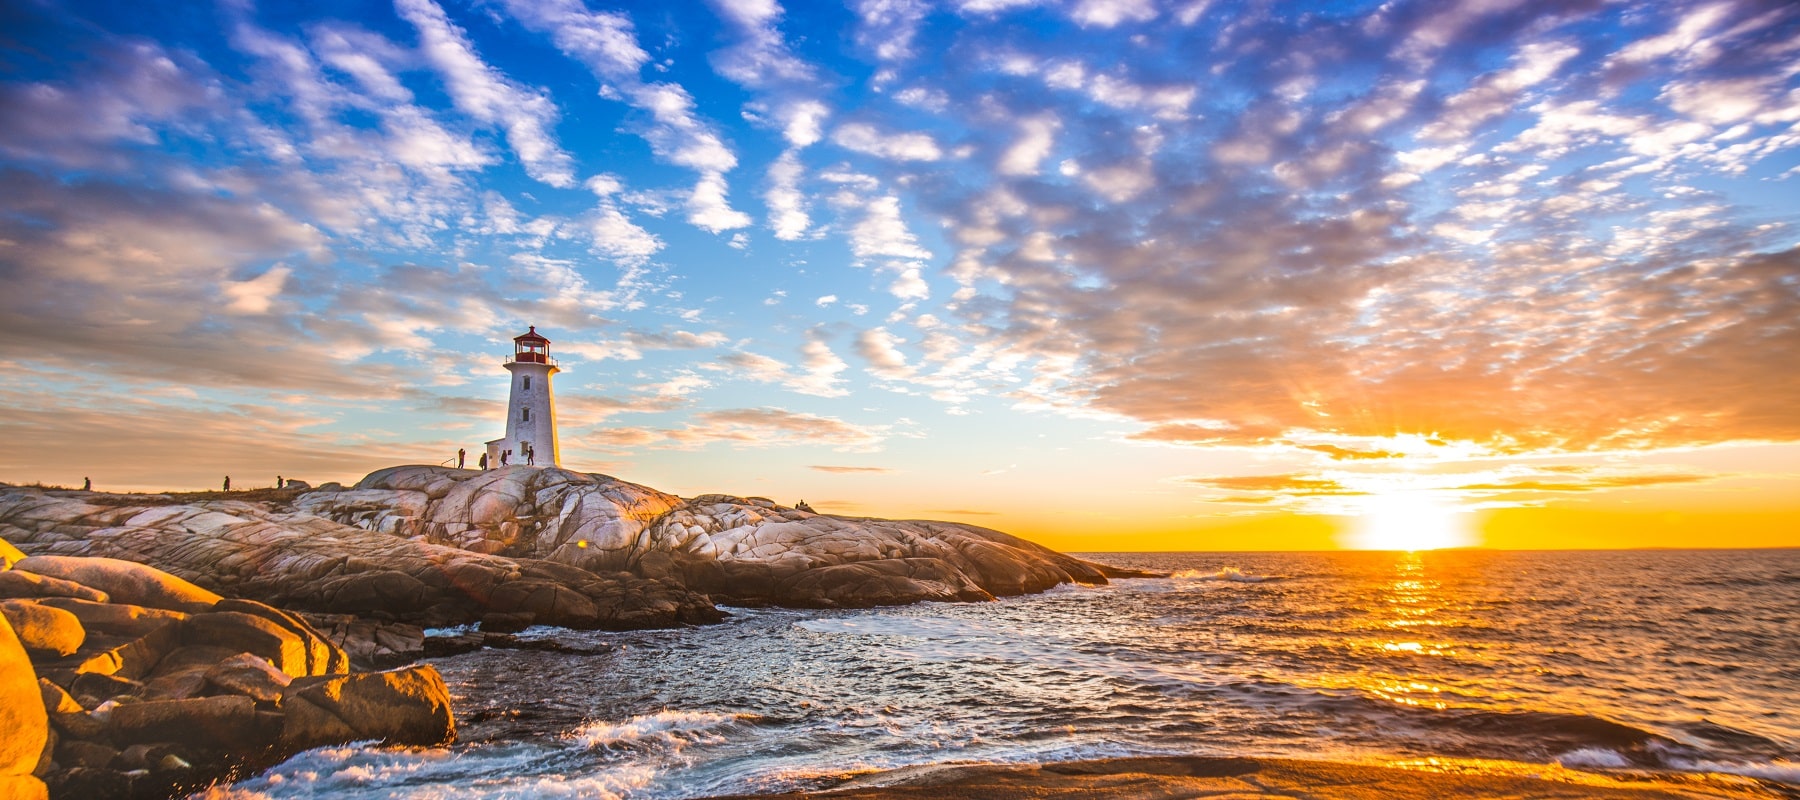 Nova Scotia, New England & National Parks